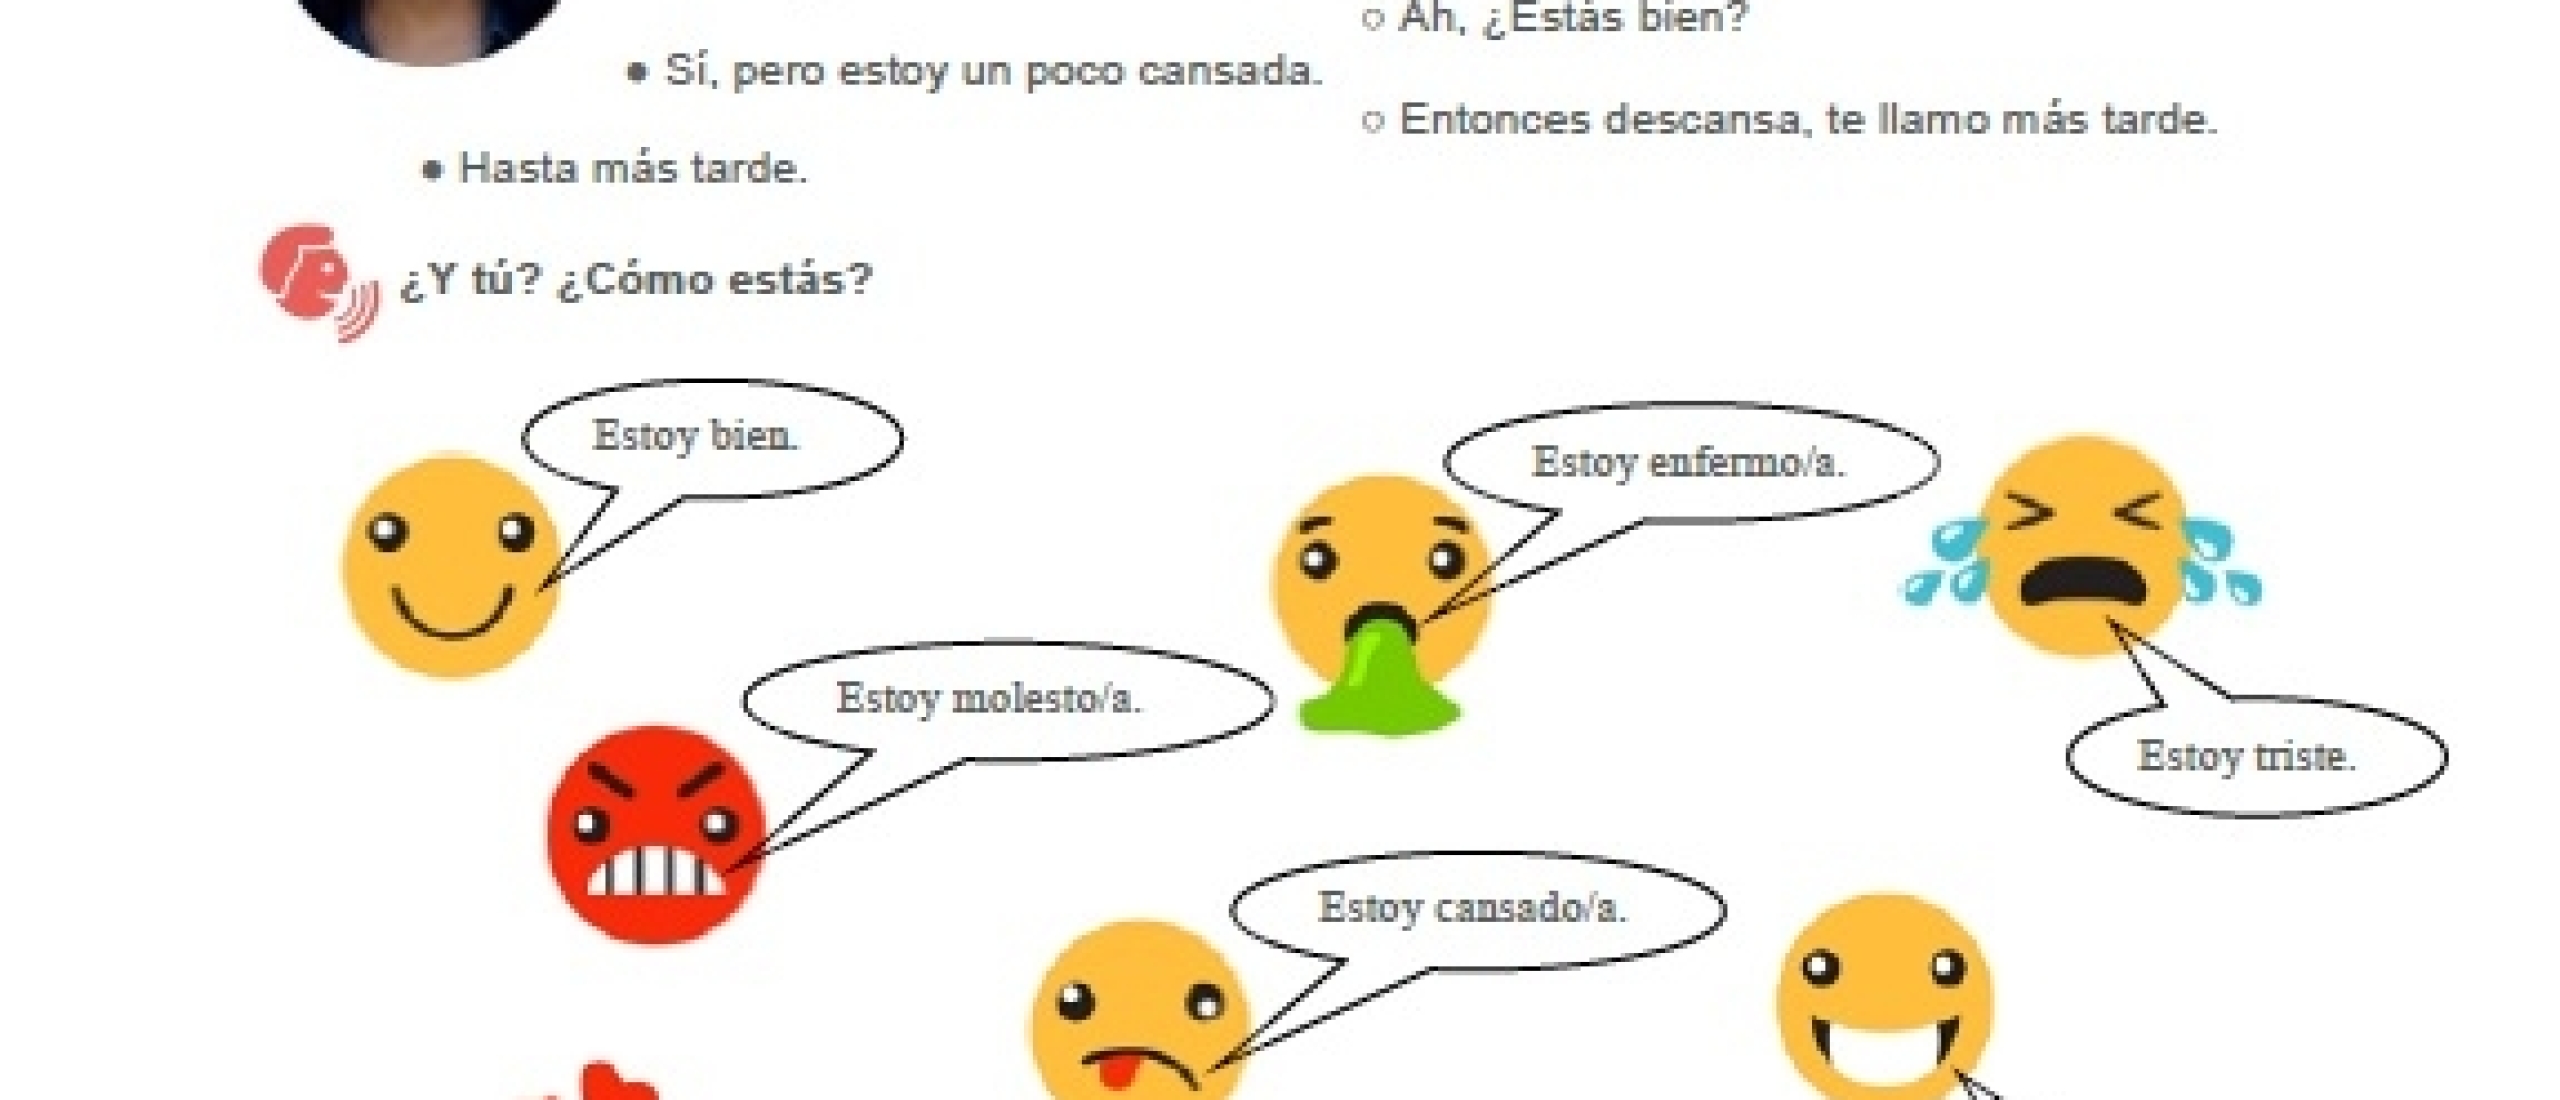 Leer hoe je gesprekken kunt voeren in het Spaans